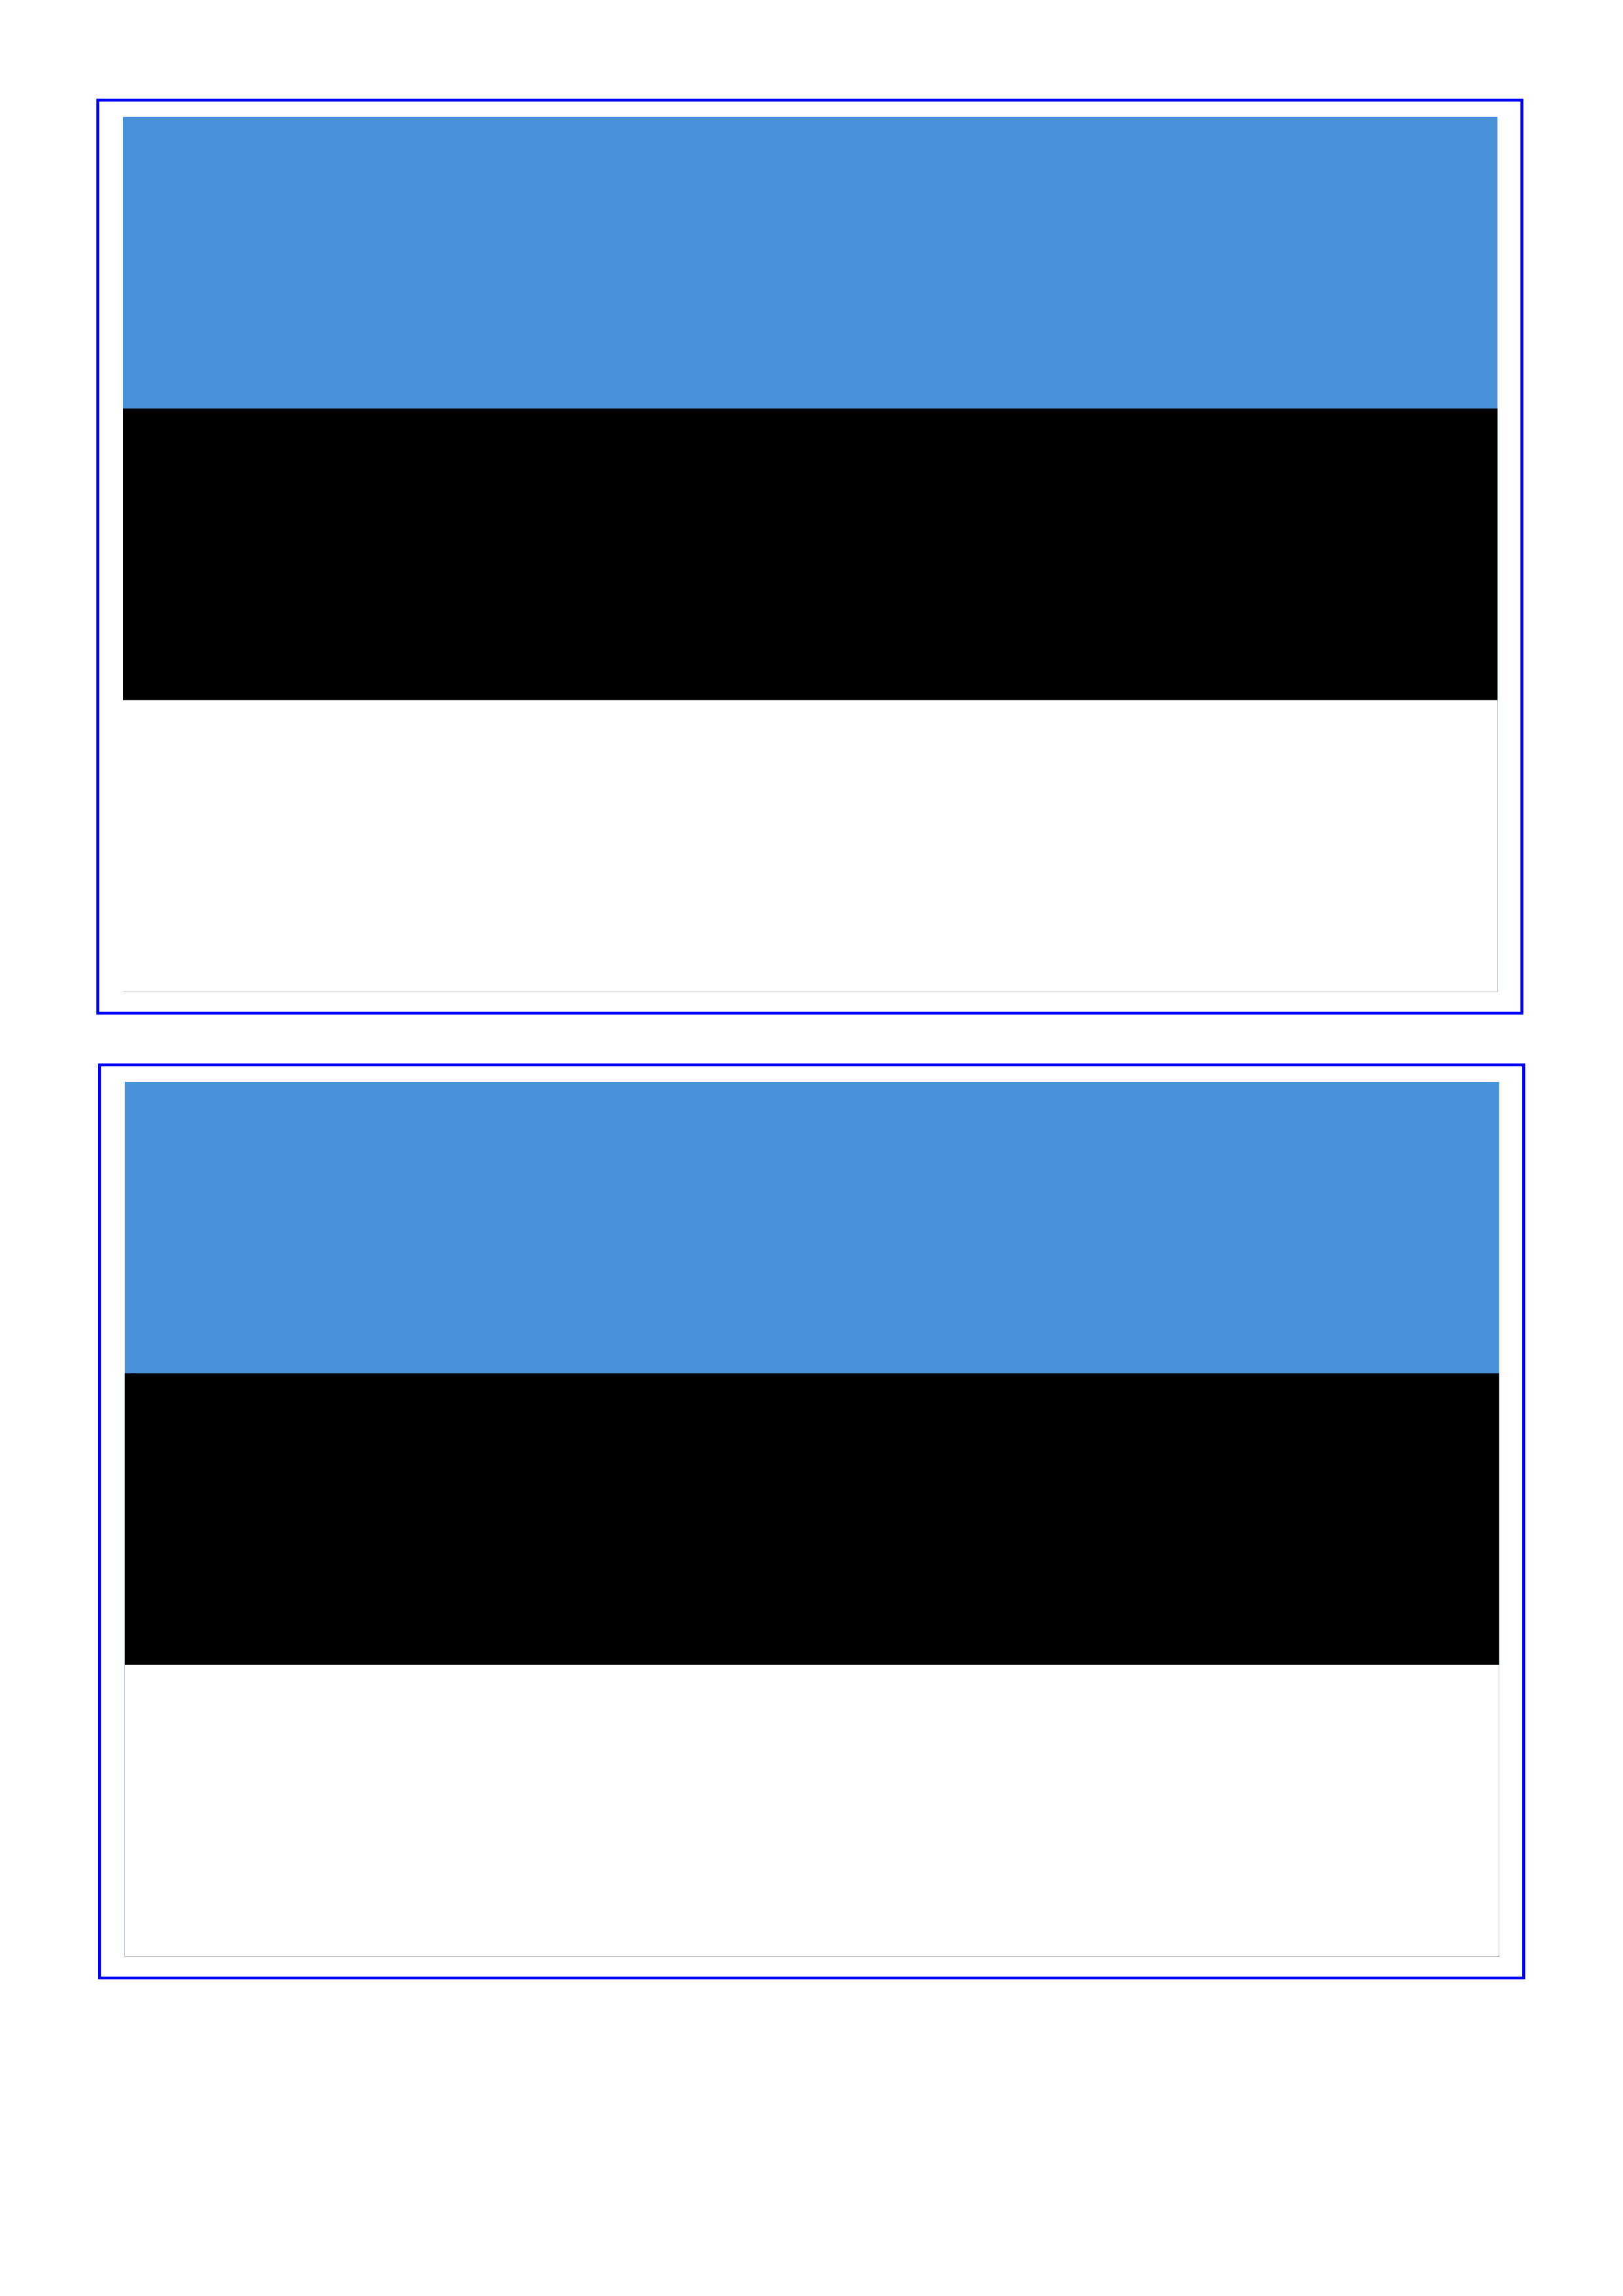 estonia flag plantilla imagen principal